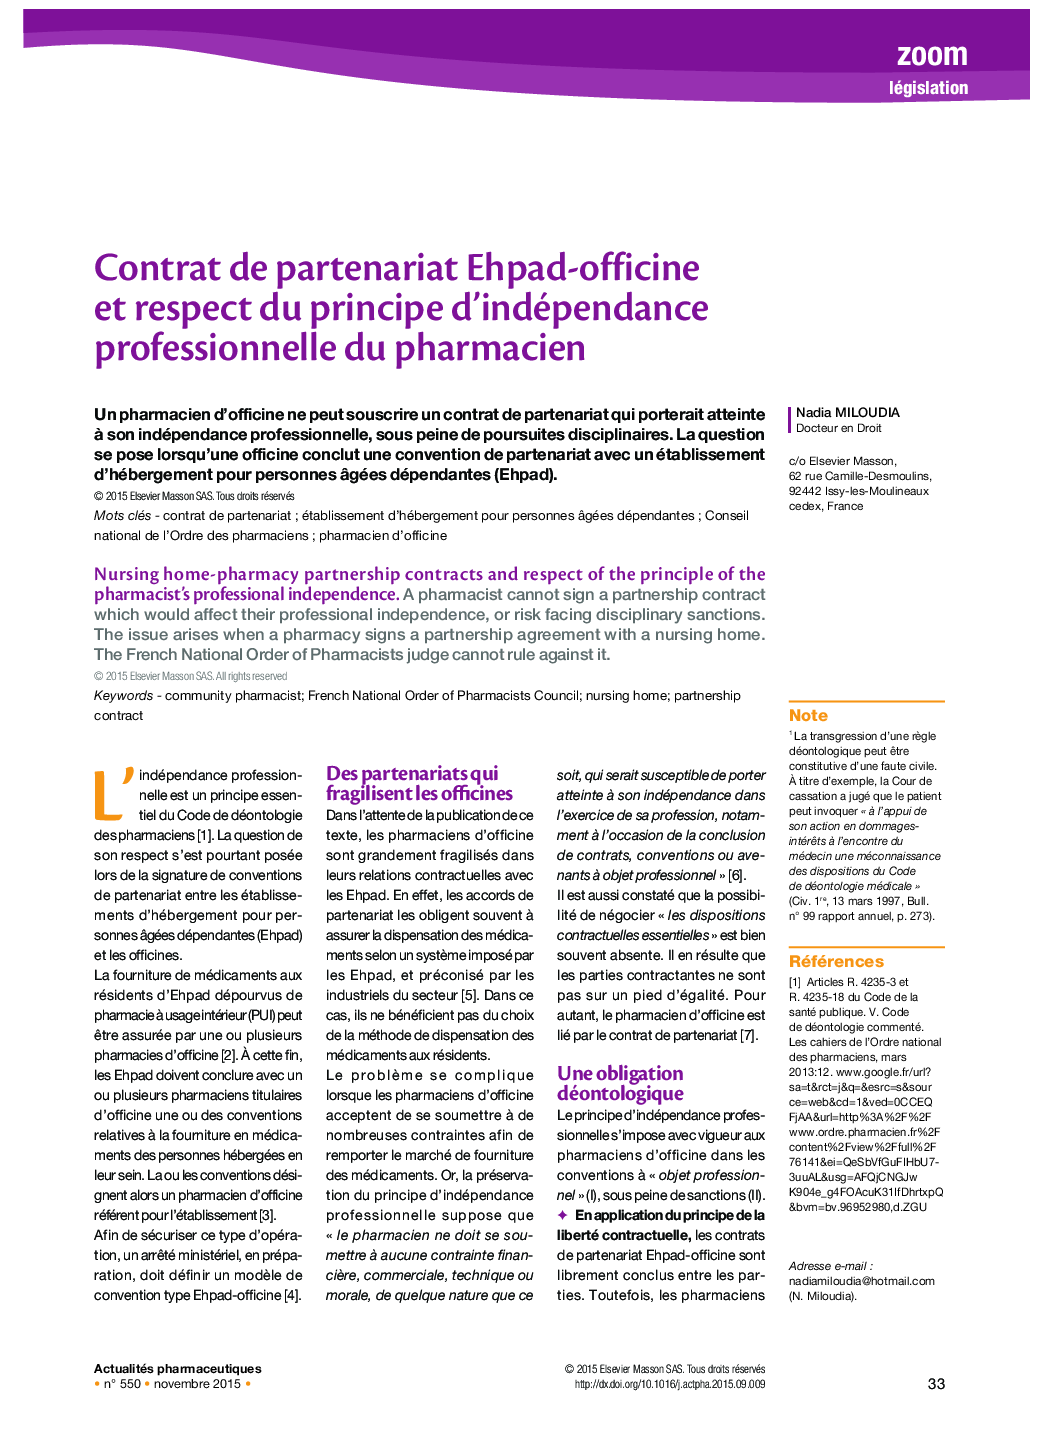 Contrat de partenariat Ehpad-officine et respect du principe d’indépendance professionnelle du pharmacien